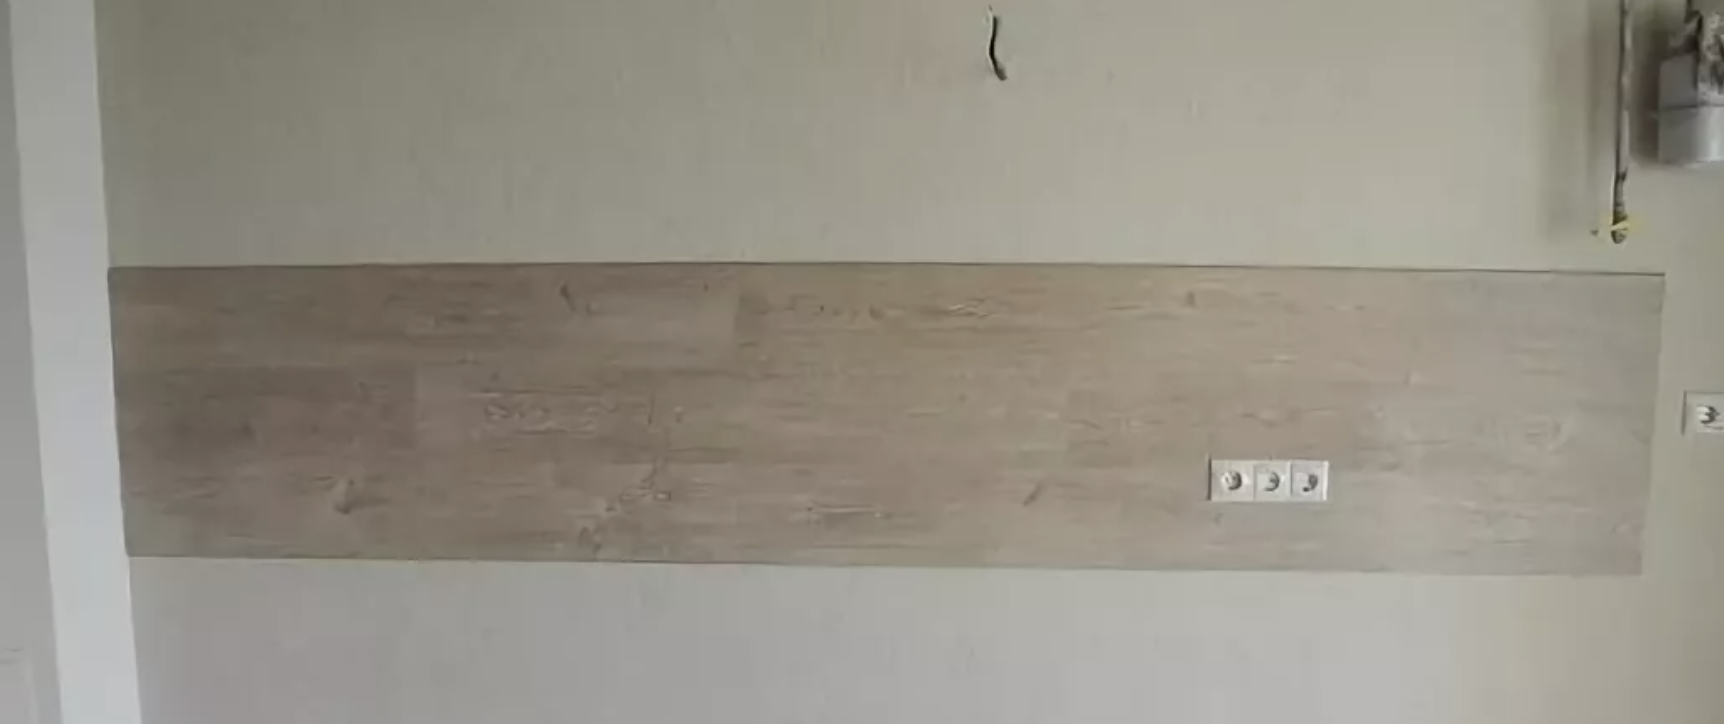 Установка стеновой панели (фартука) на кухне своими руками